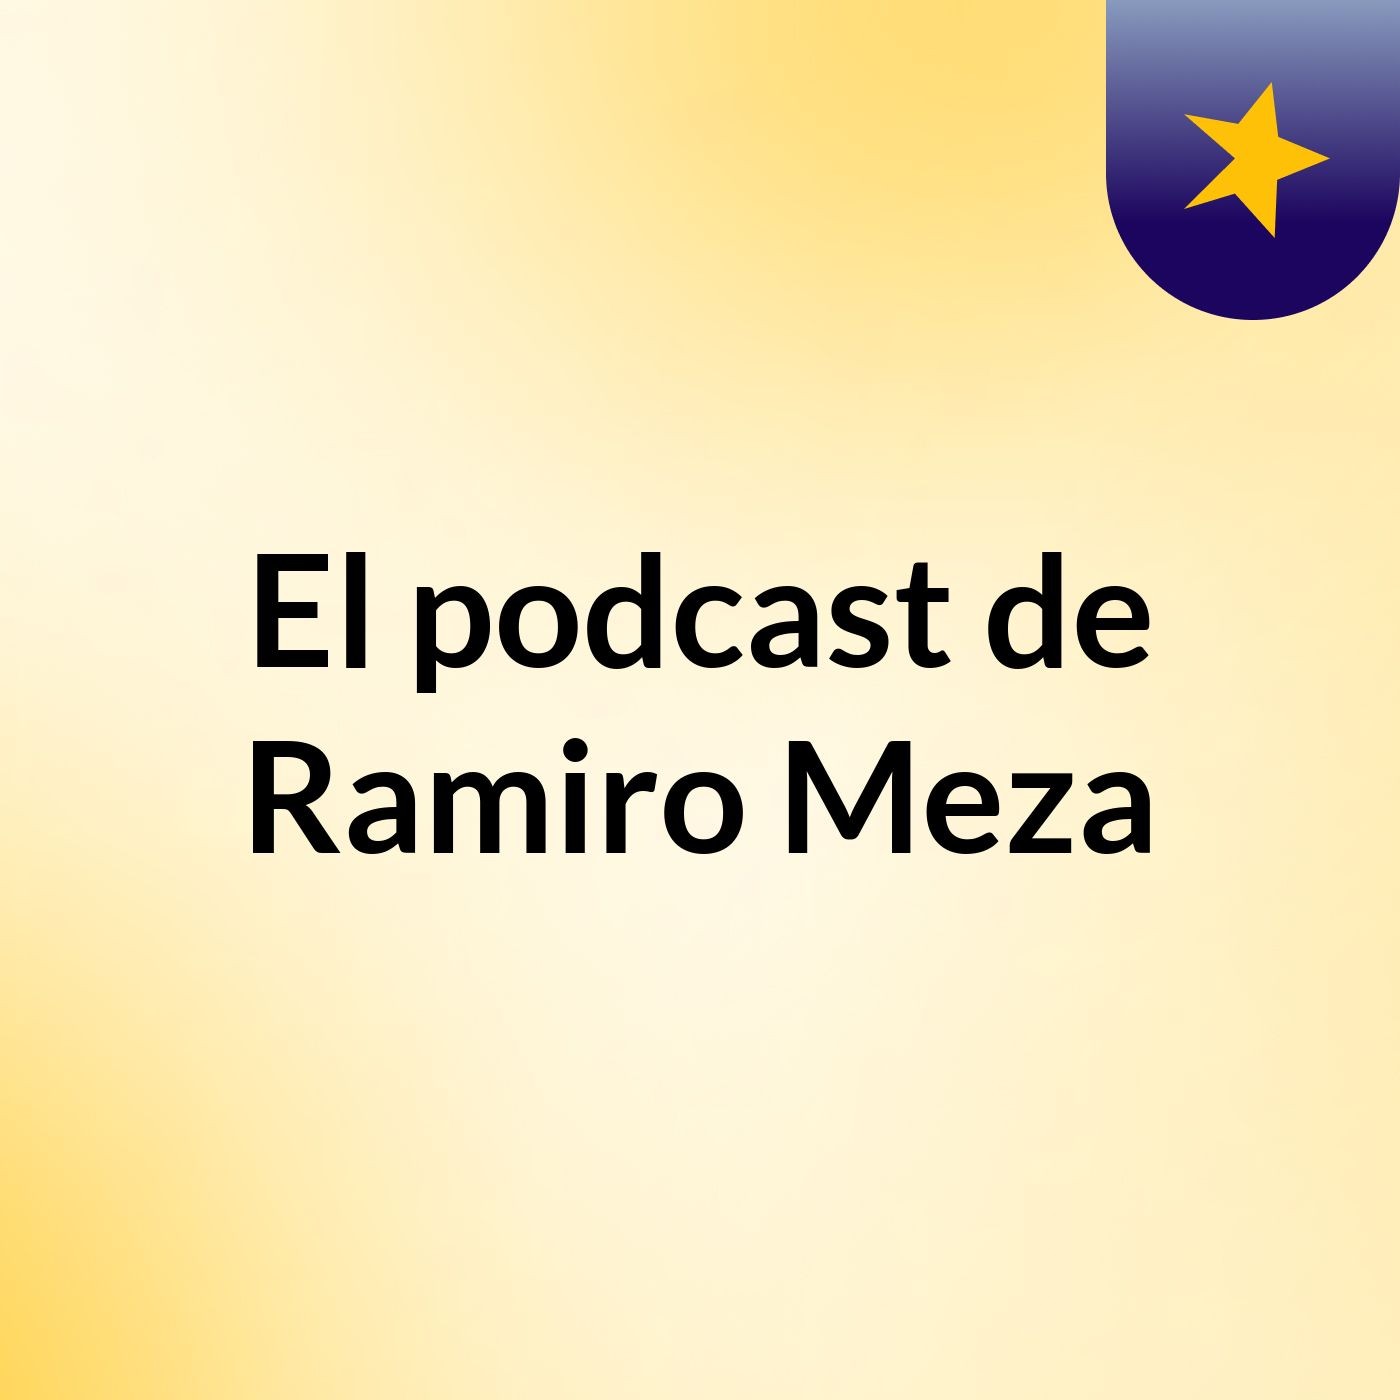 El podcast de Ramiro Meza